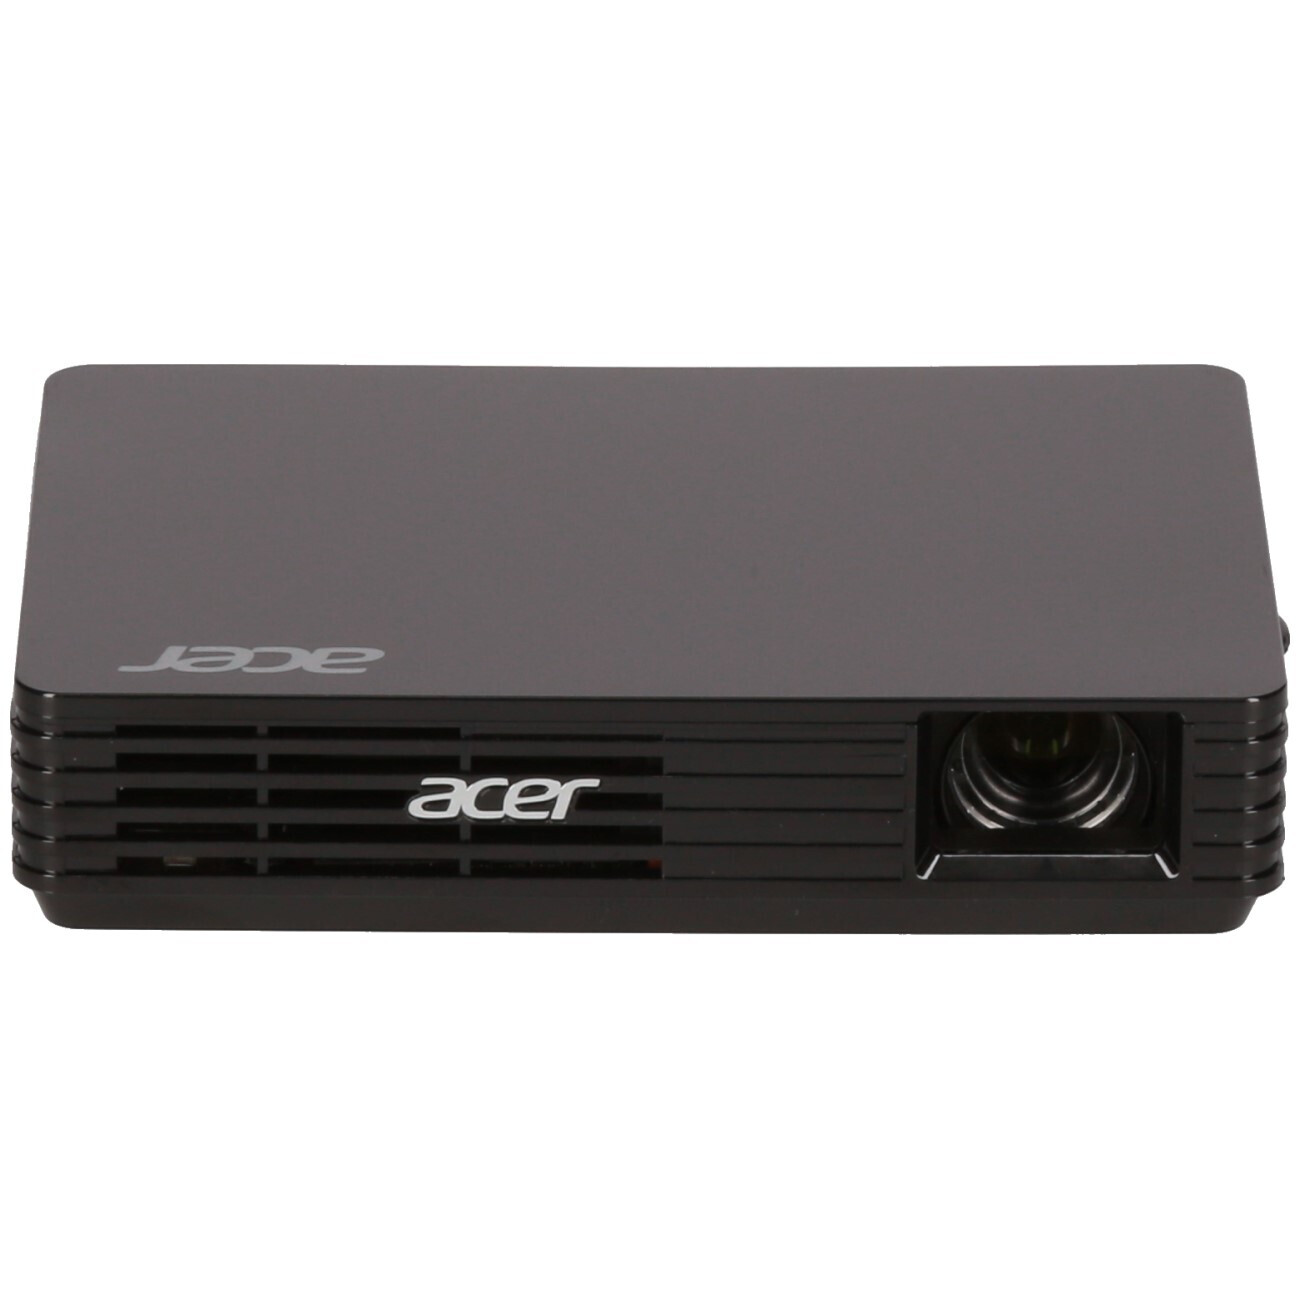 Acer C120 - Demoware Bronze